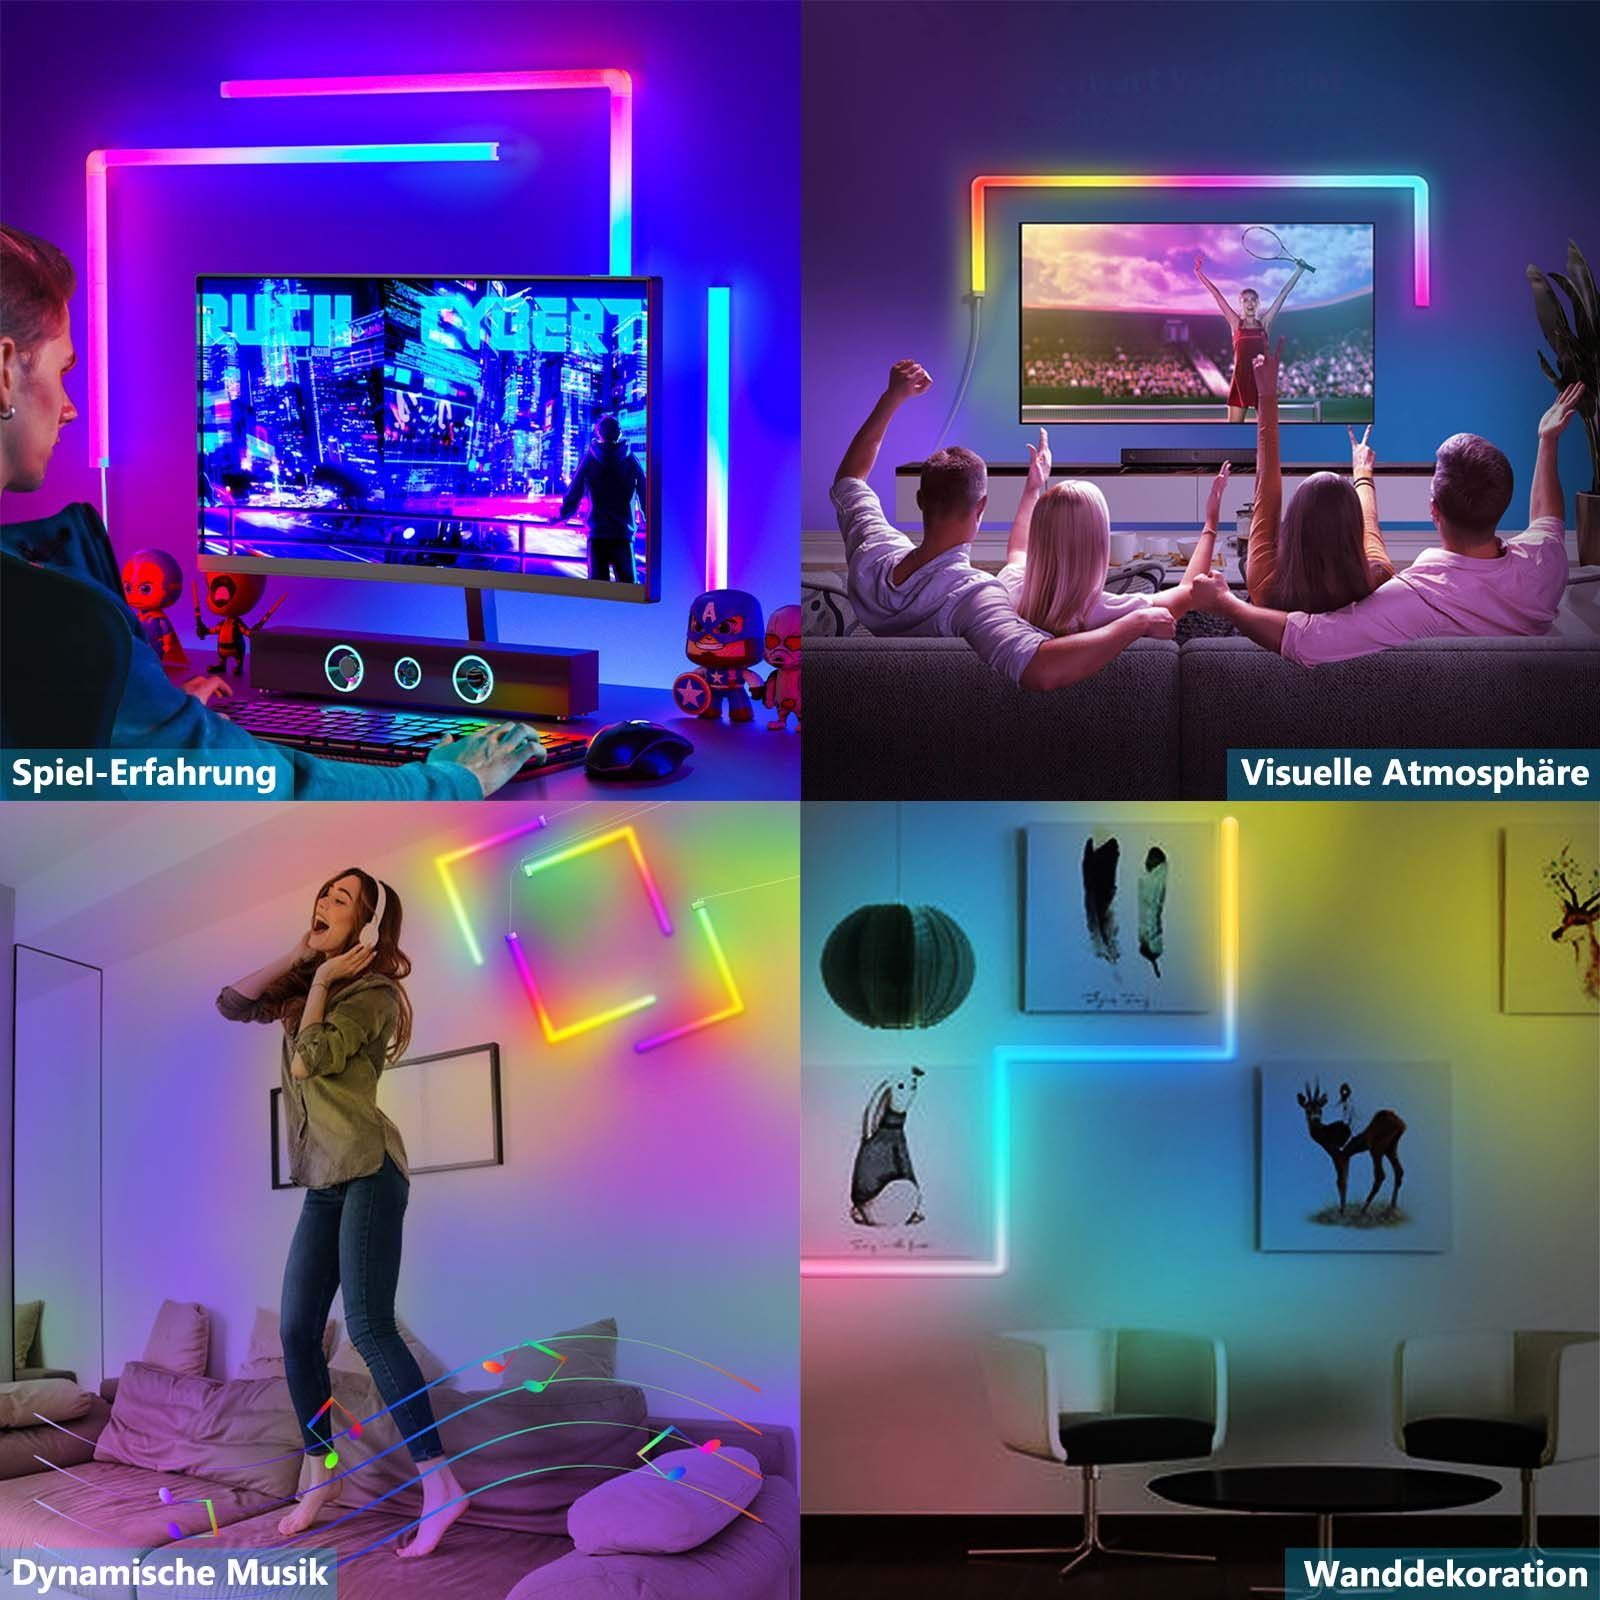 Dekolicht Deko, Schlafzimmer Gaming Rosnek Smart, Musiksyn, Stück, LED Zimmer für App/Fernbedienung RGB, 4 RGB,